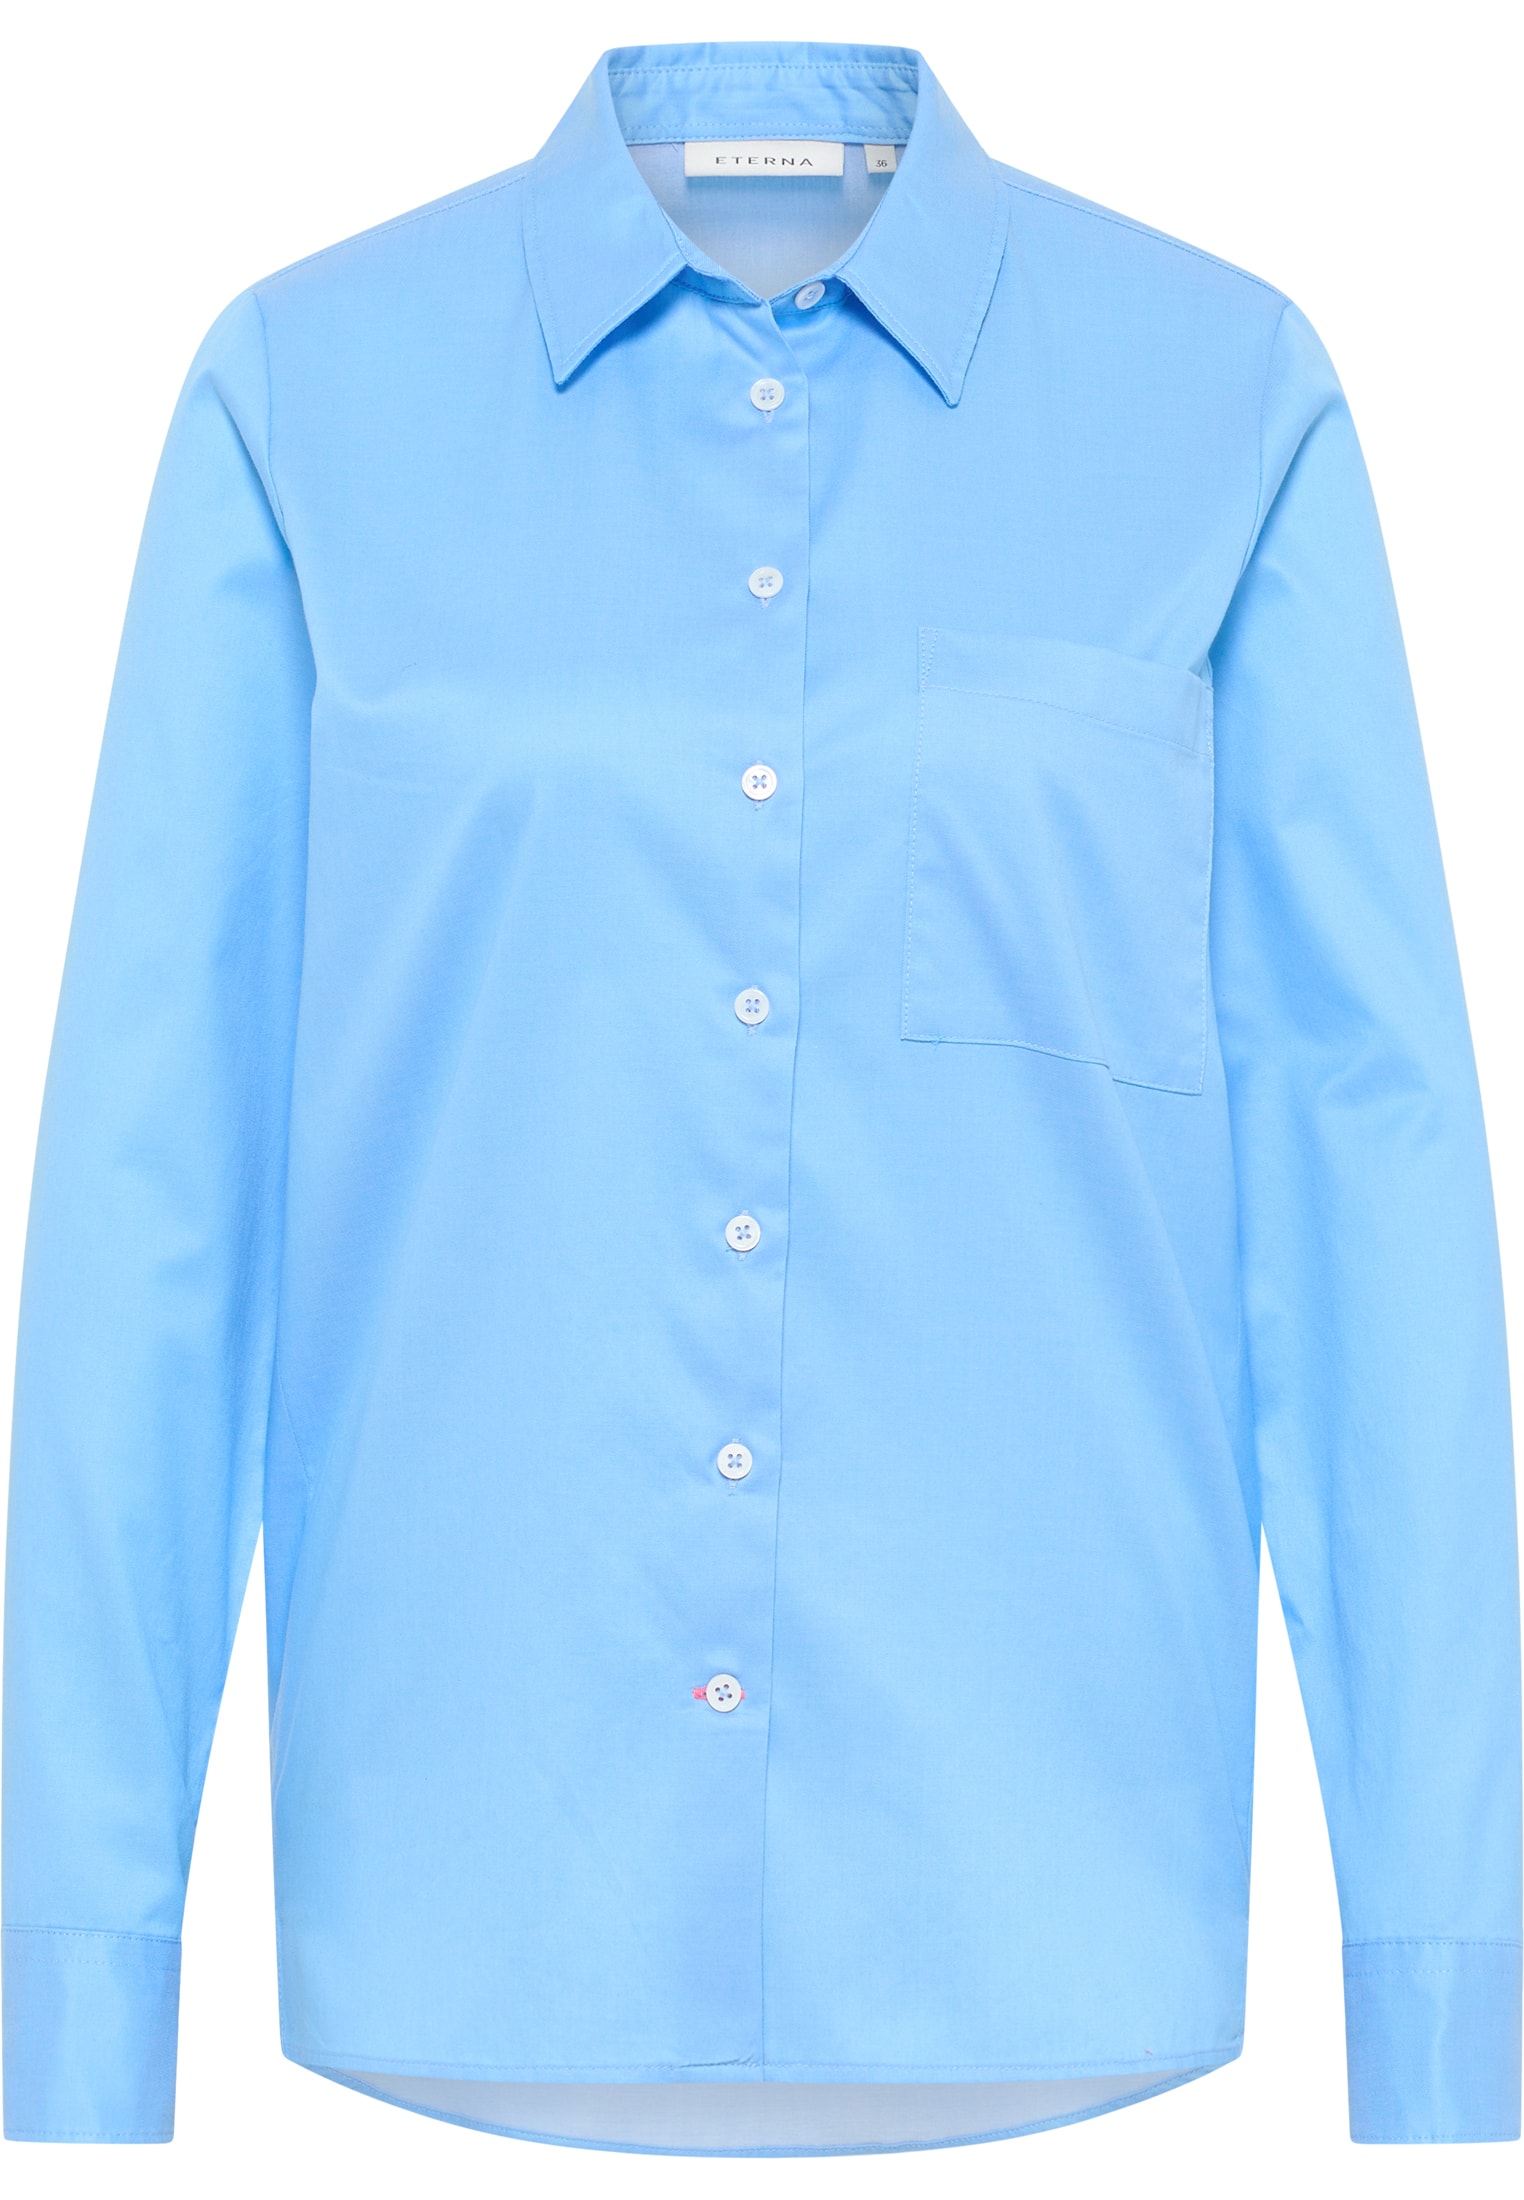 Soft Luxury Shirt Bluse in blau unifarben | blau | 38 | Langarm |  2BL03851-01-41-38-1/1